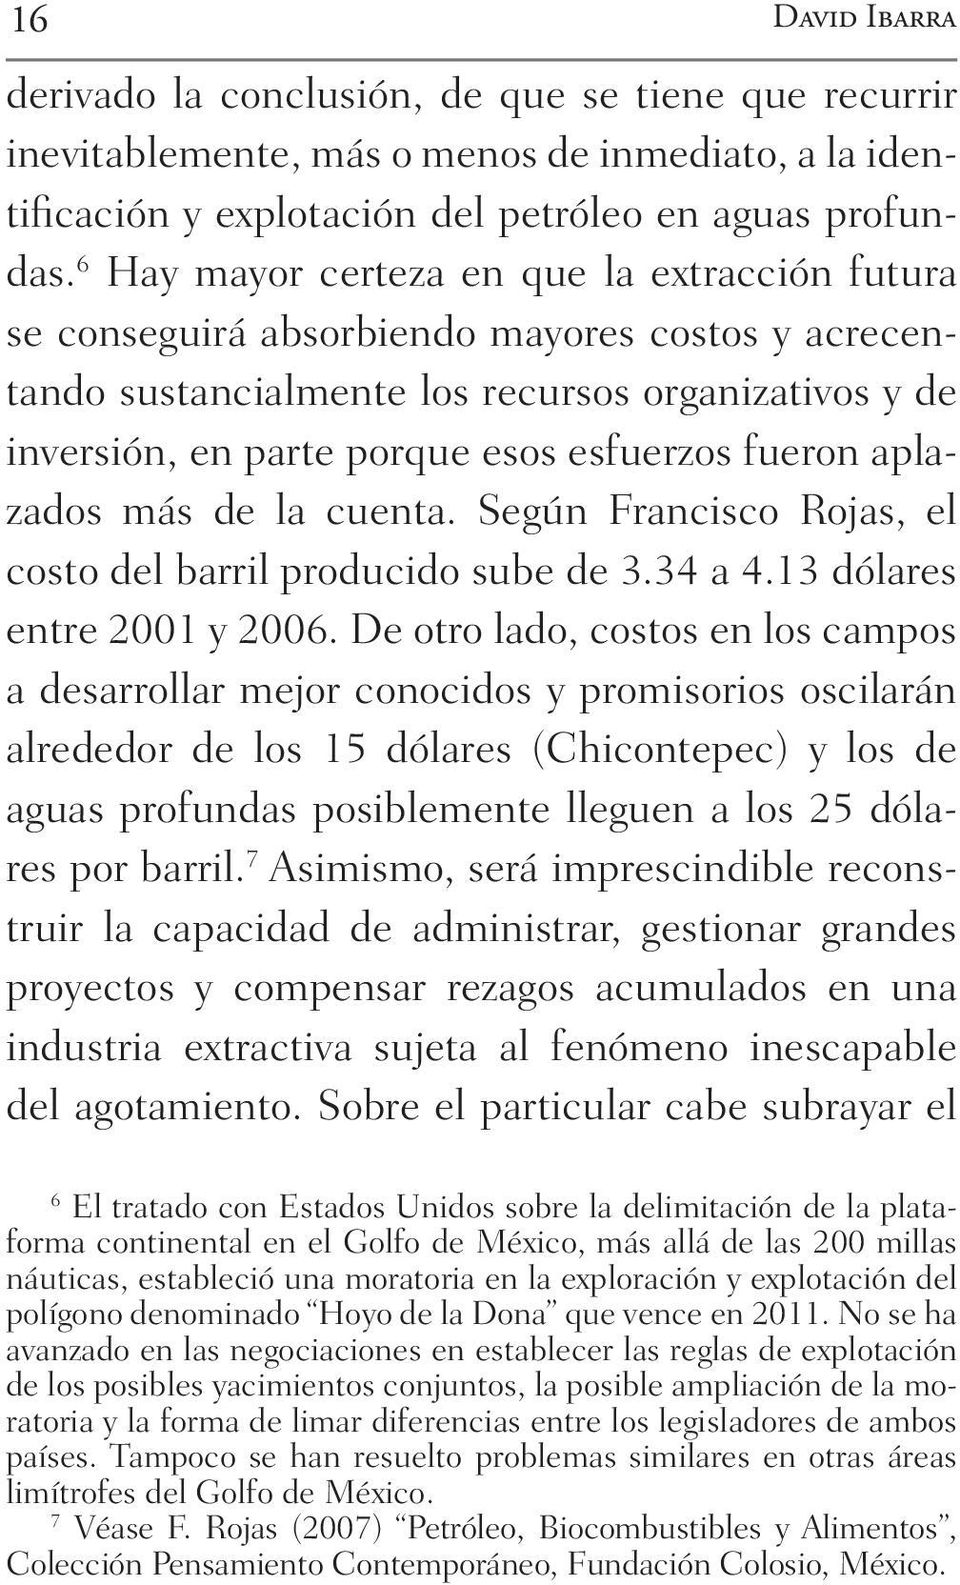 fueron aplazados más de la cuenta. Según Francisco Rojas, el costo del barril producido sube de 3.34 a 4.13 dólares entre 2001 y 2006.